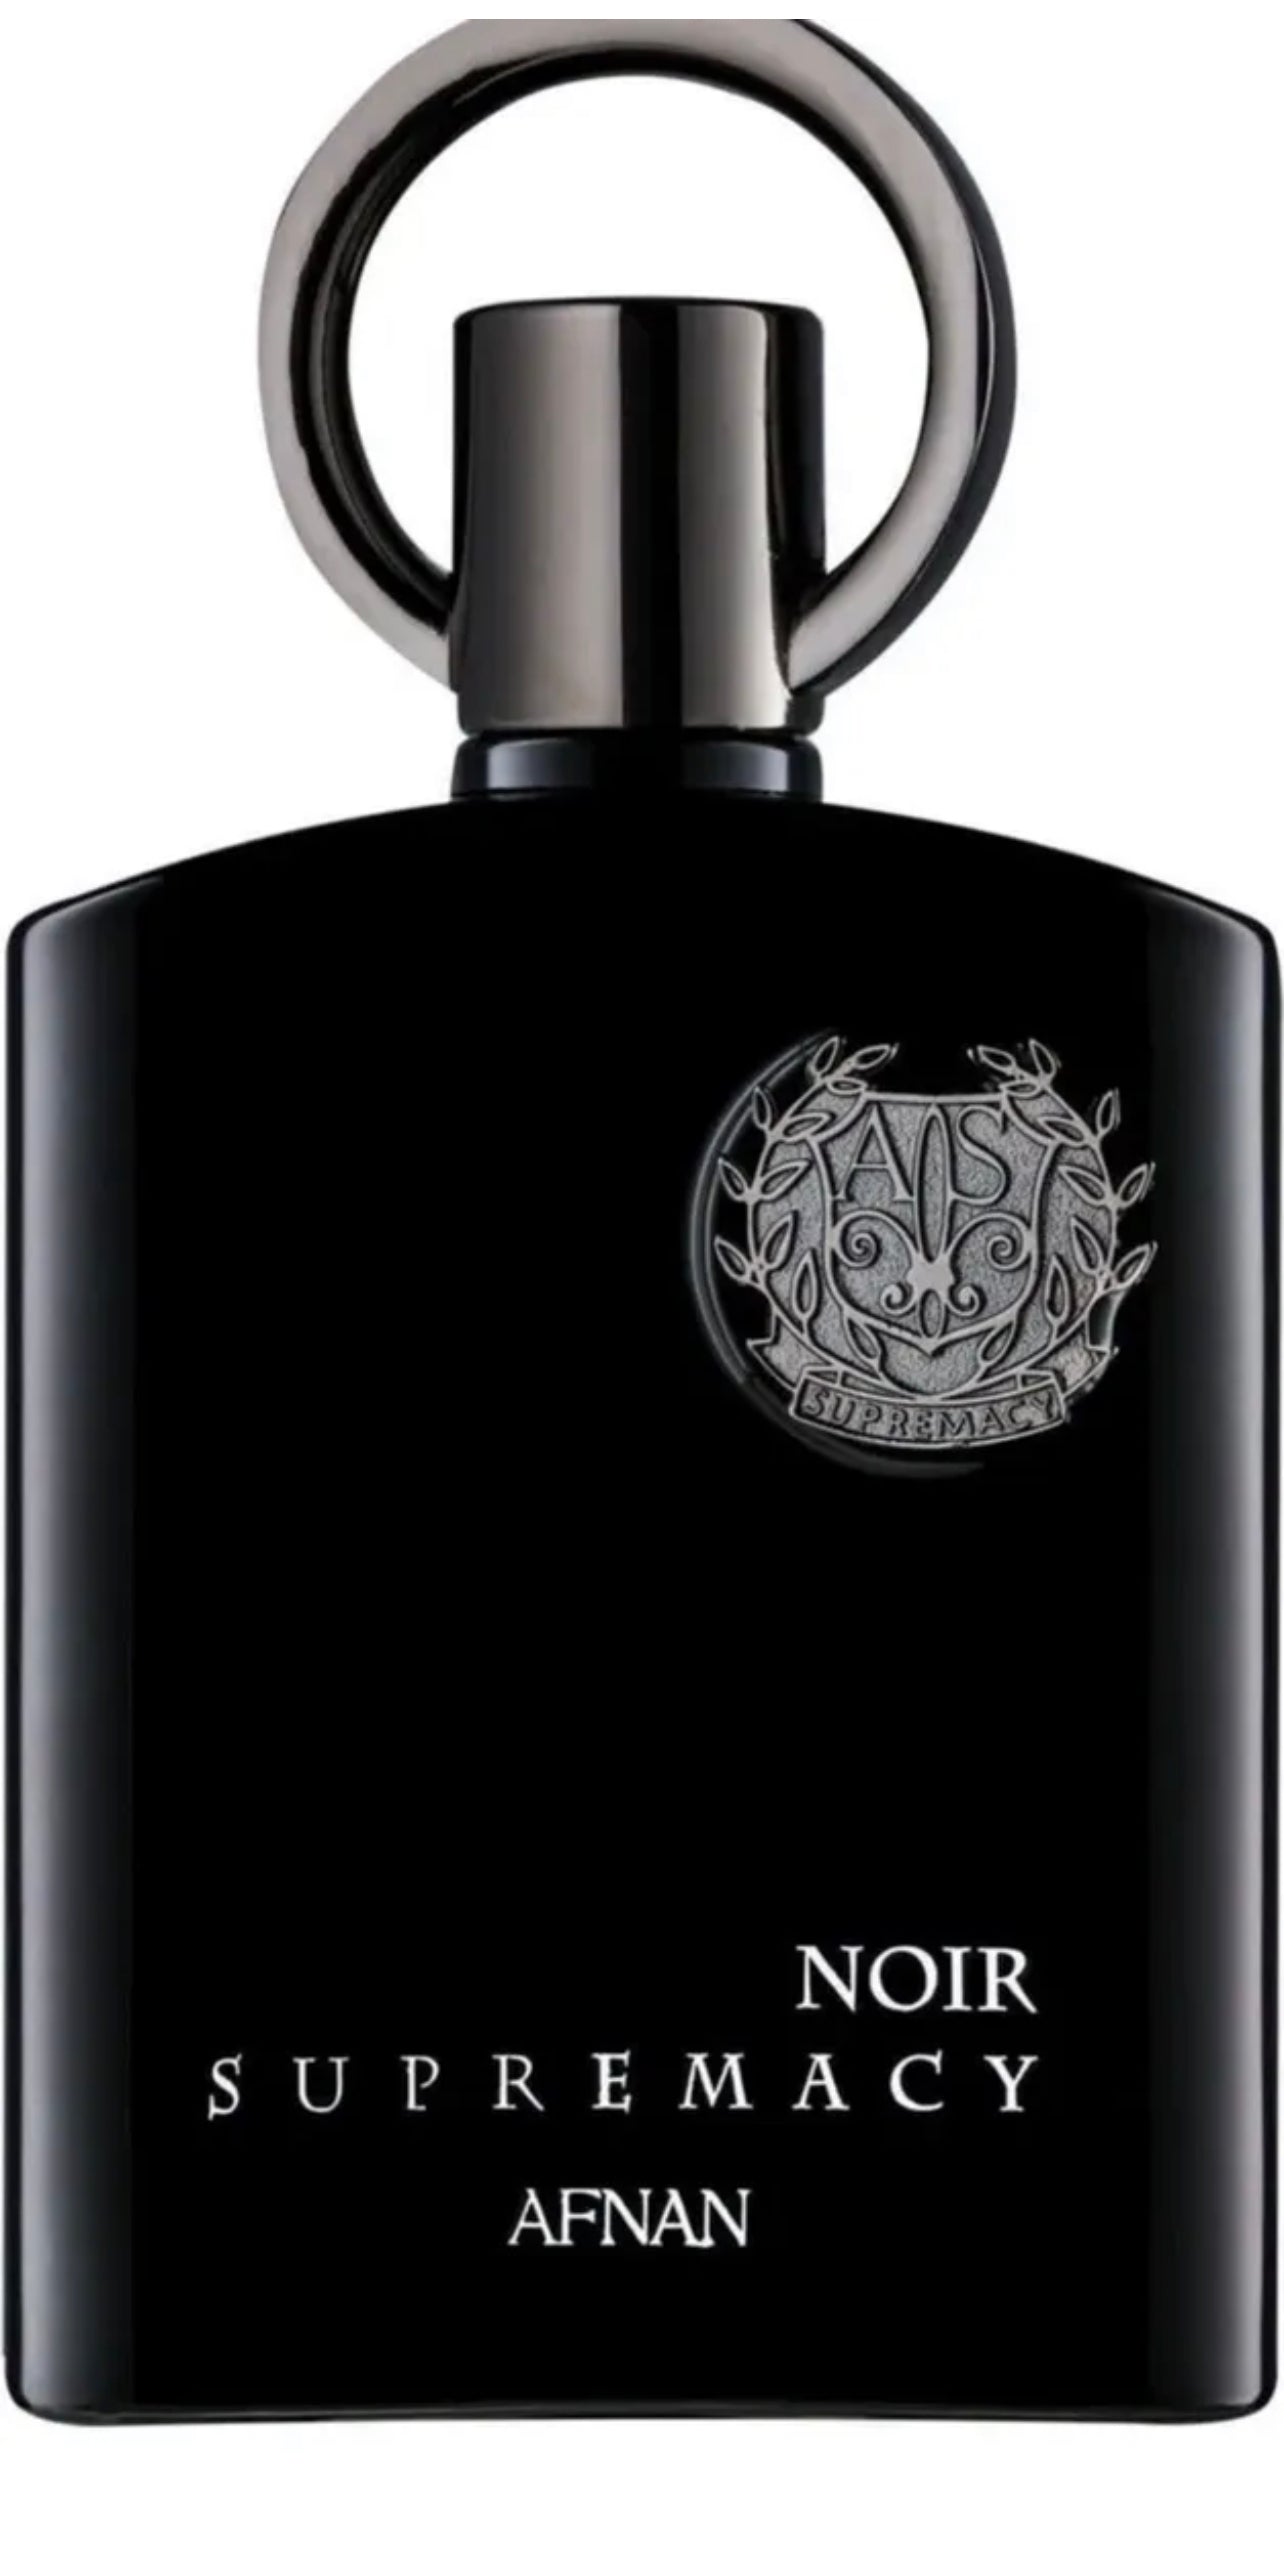 Supremacy Noir  | Eau De Parfum Vaporisateur | 100ml Original By Afnan